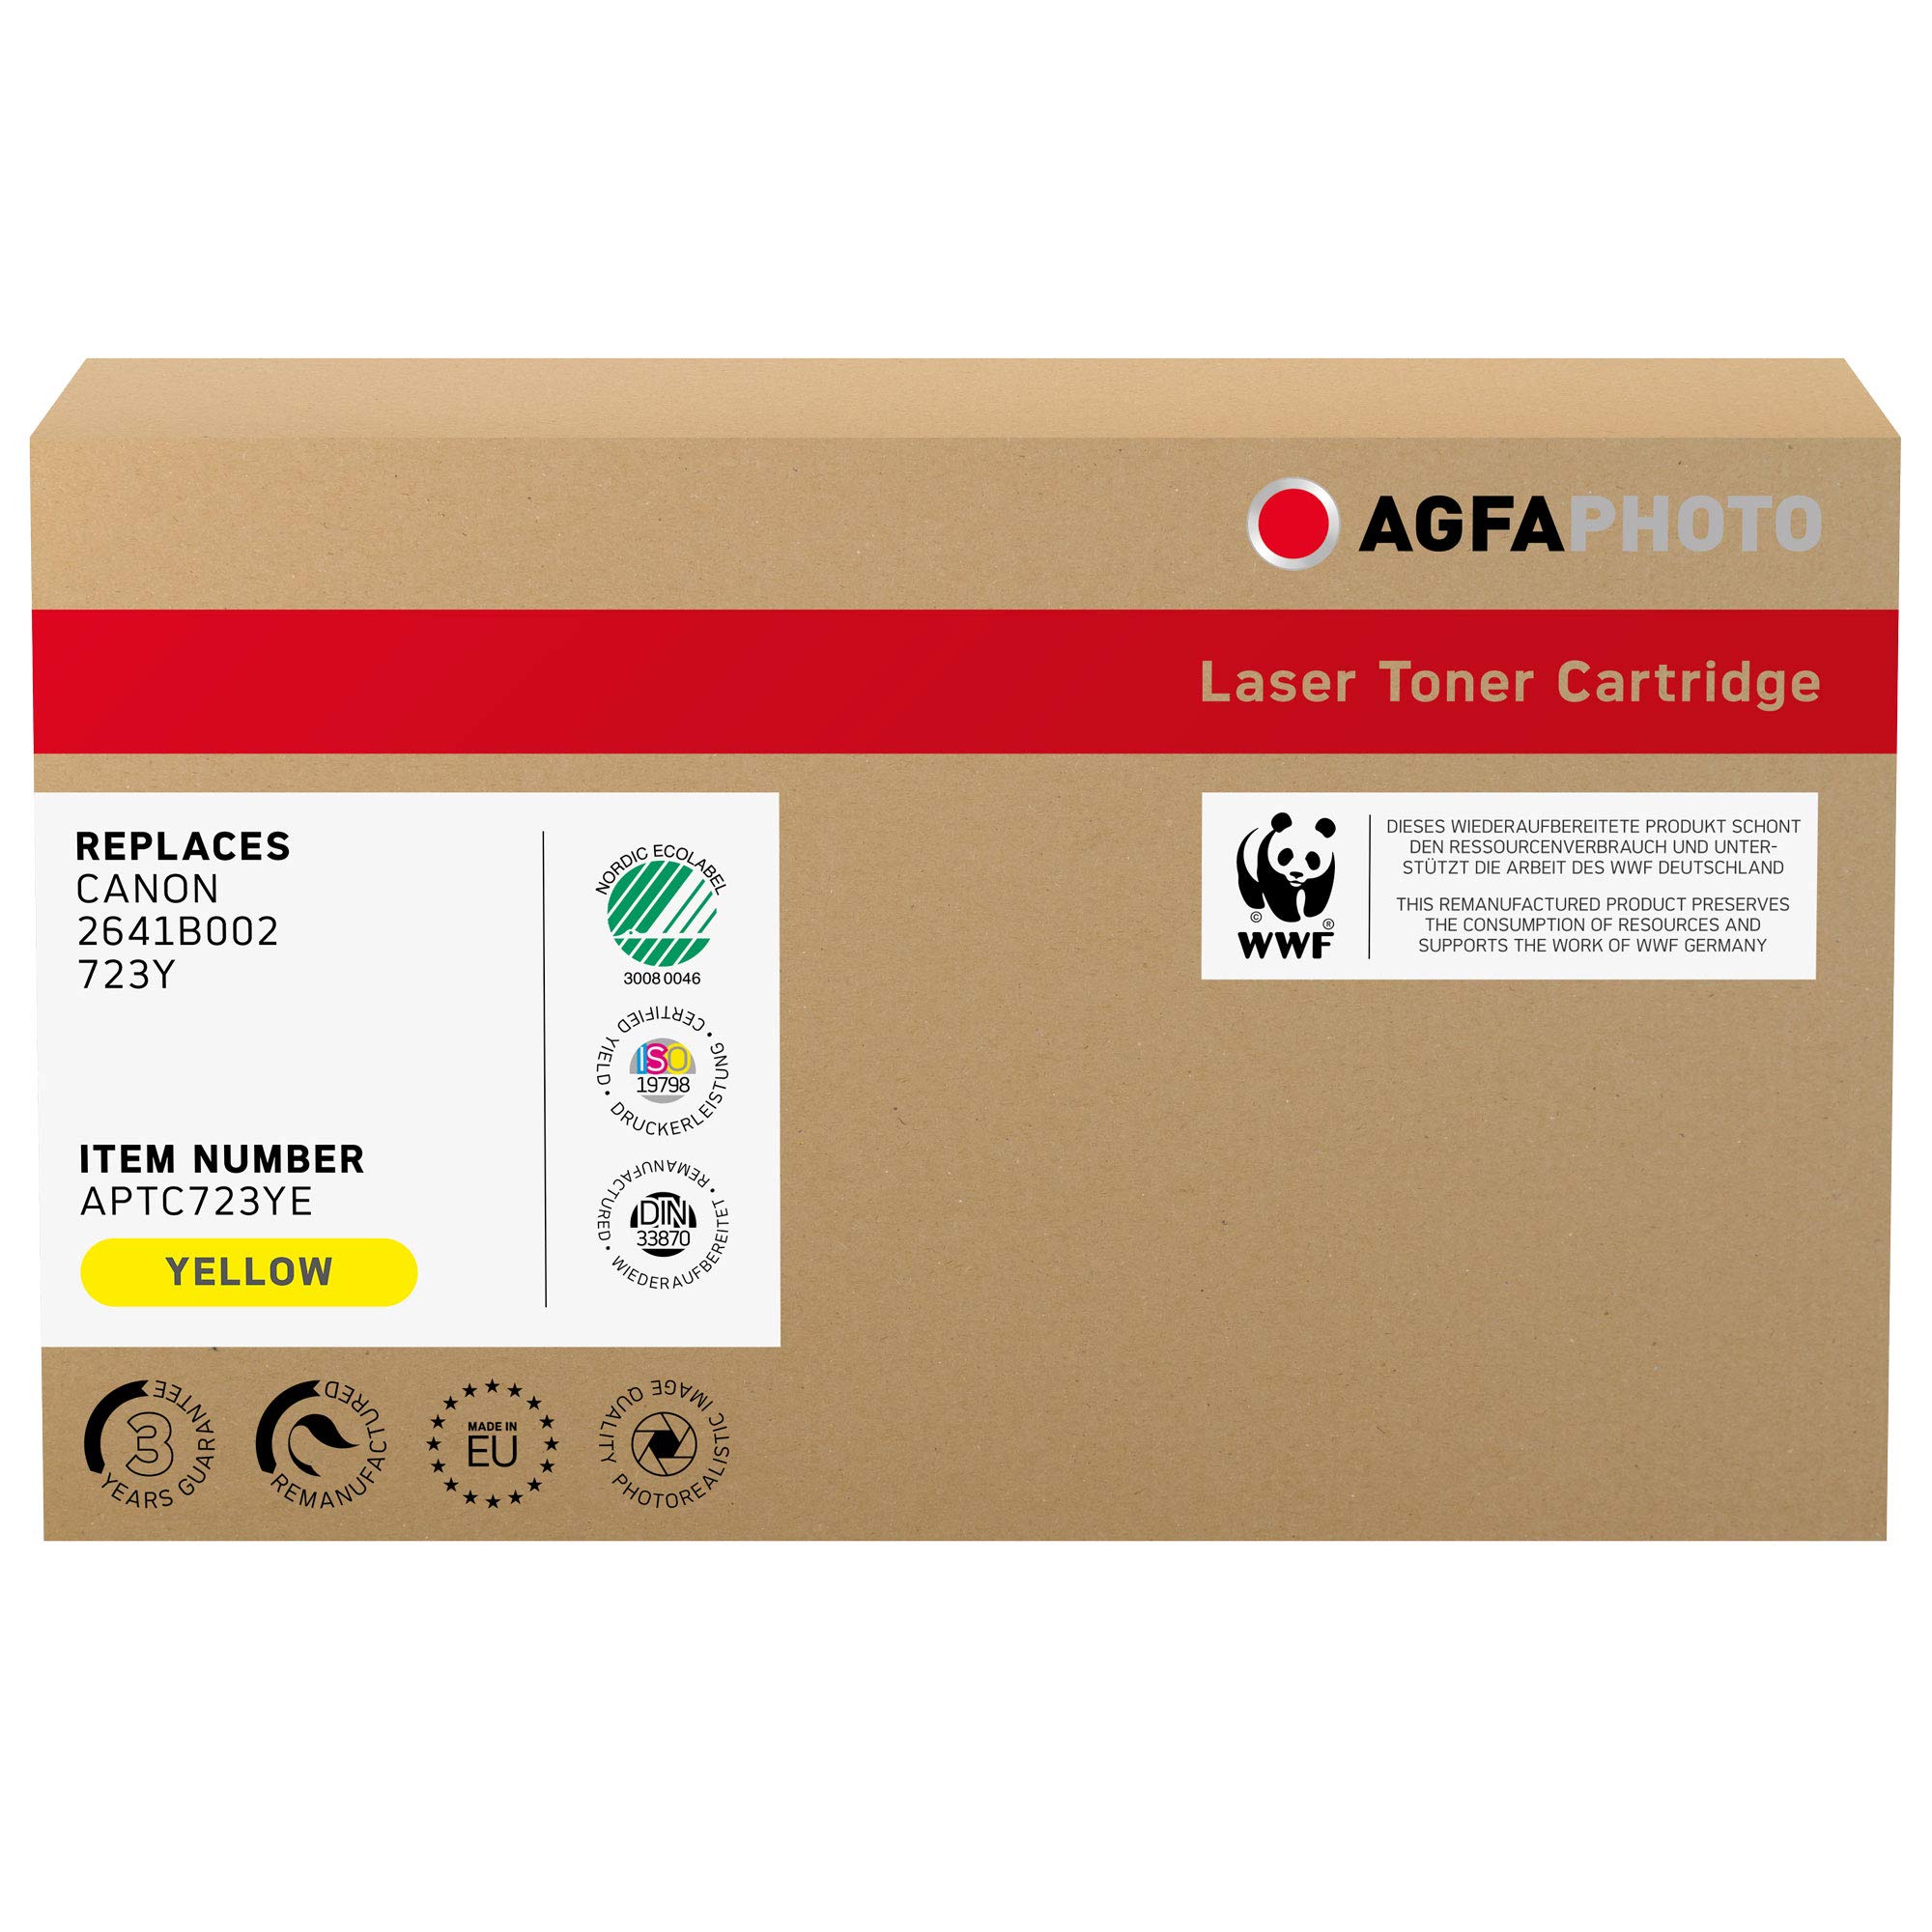 AgfaPhoto Laser Toner ersetzt Canon 2641B002; 723Y, 8500 Seiten, gelb (für die Verwendung in Canon LBP-7750)